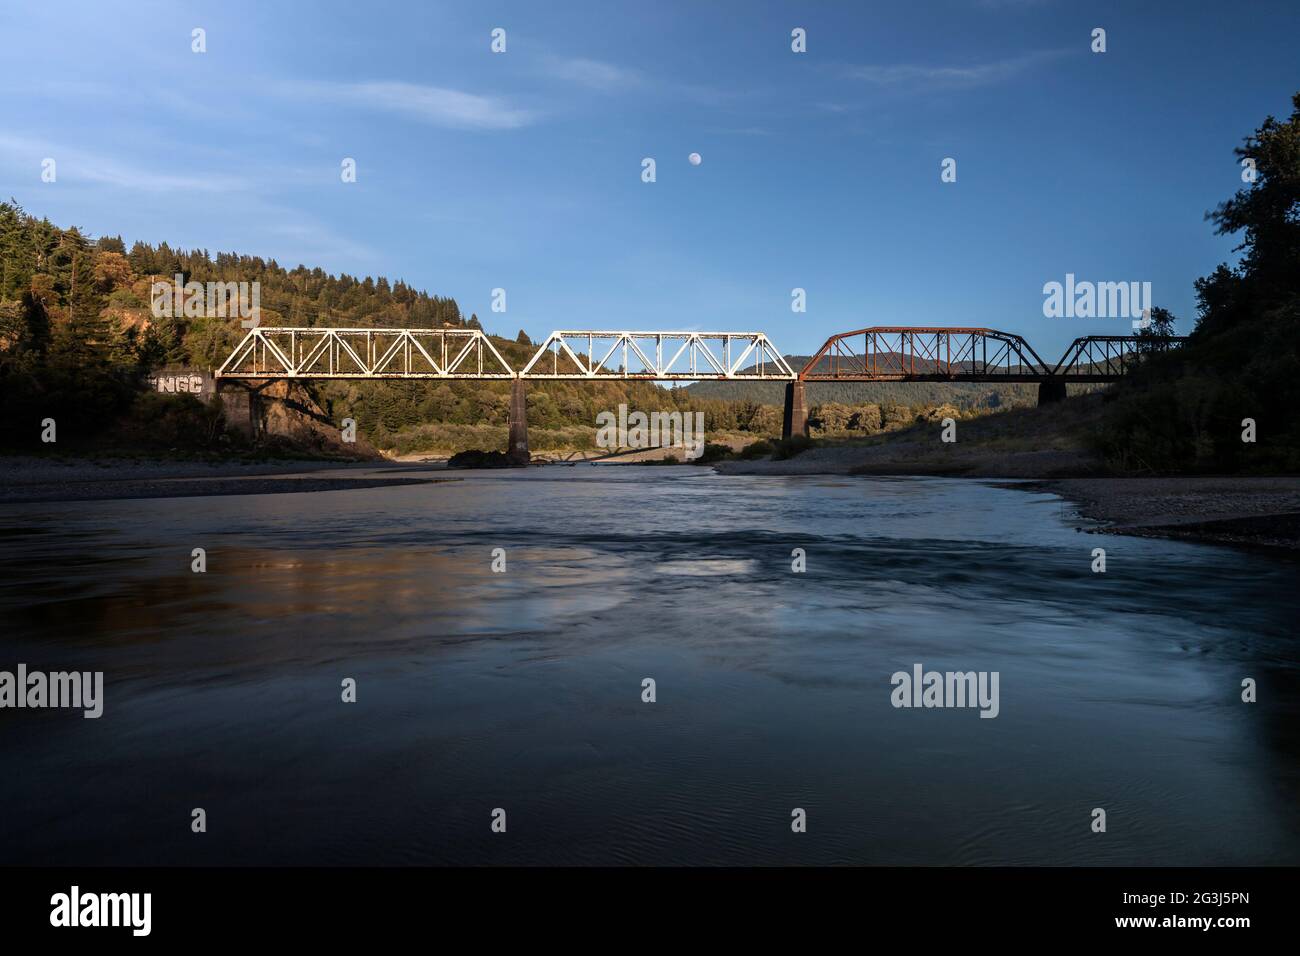 El puente del ferrocarril del Pacífico noroeste cruza el río Eel en Dyerville, California Foto de stock